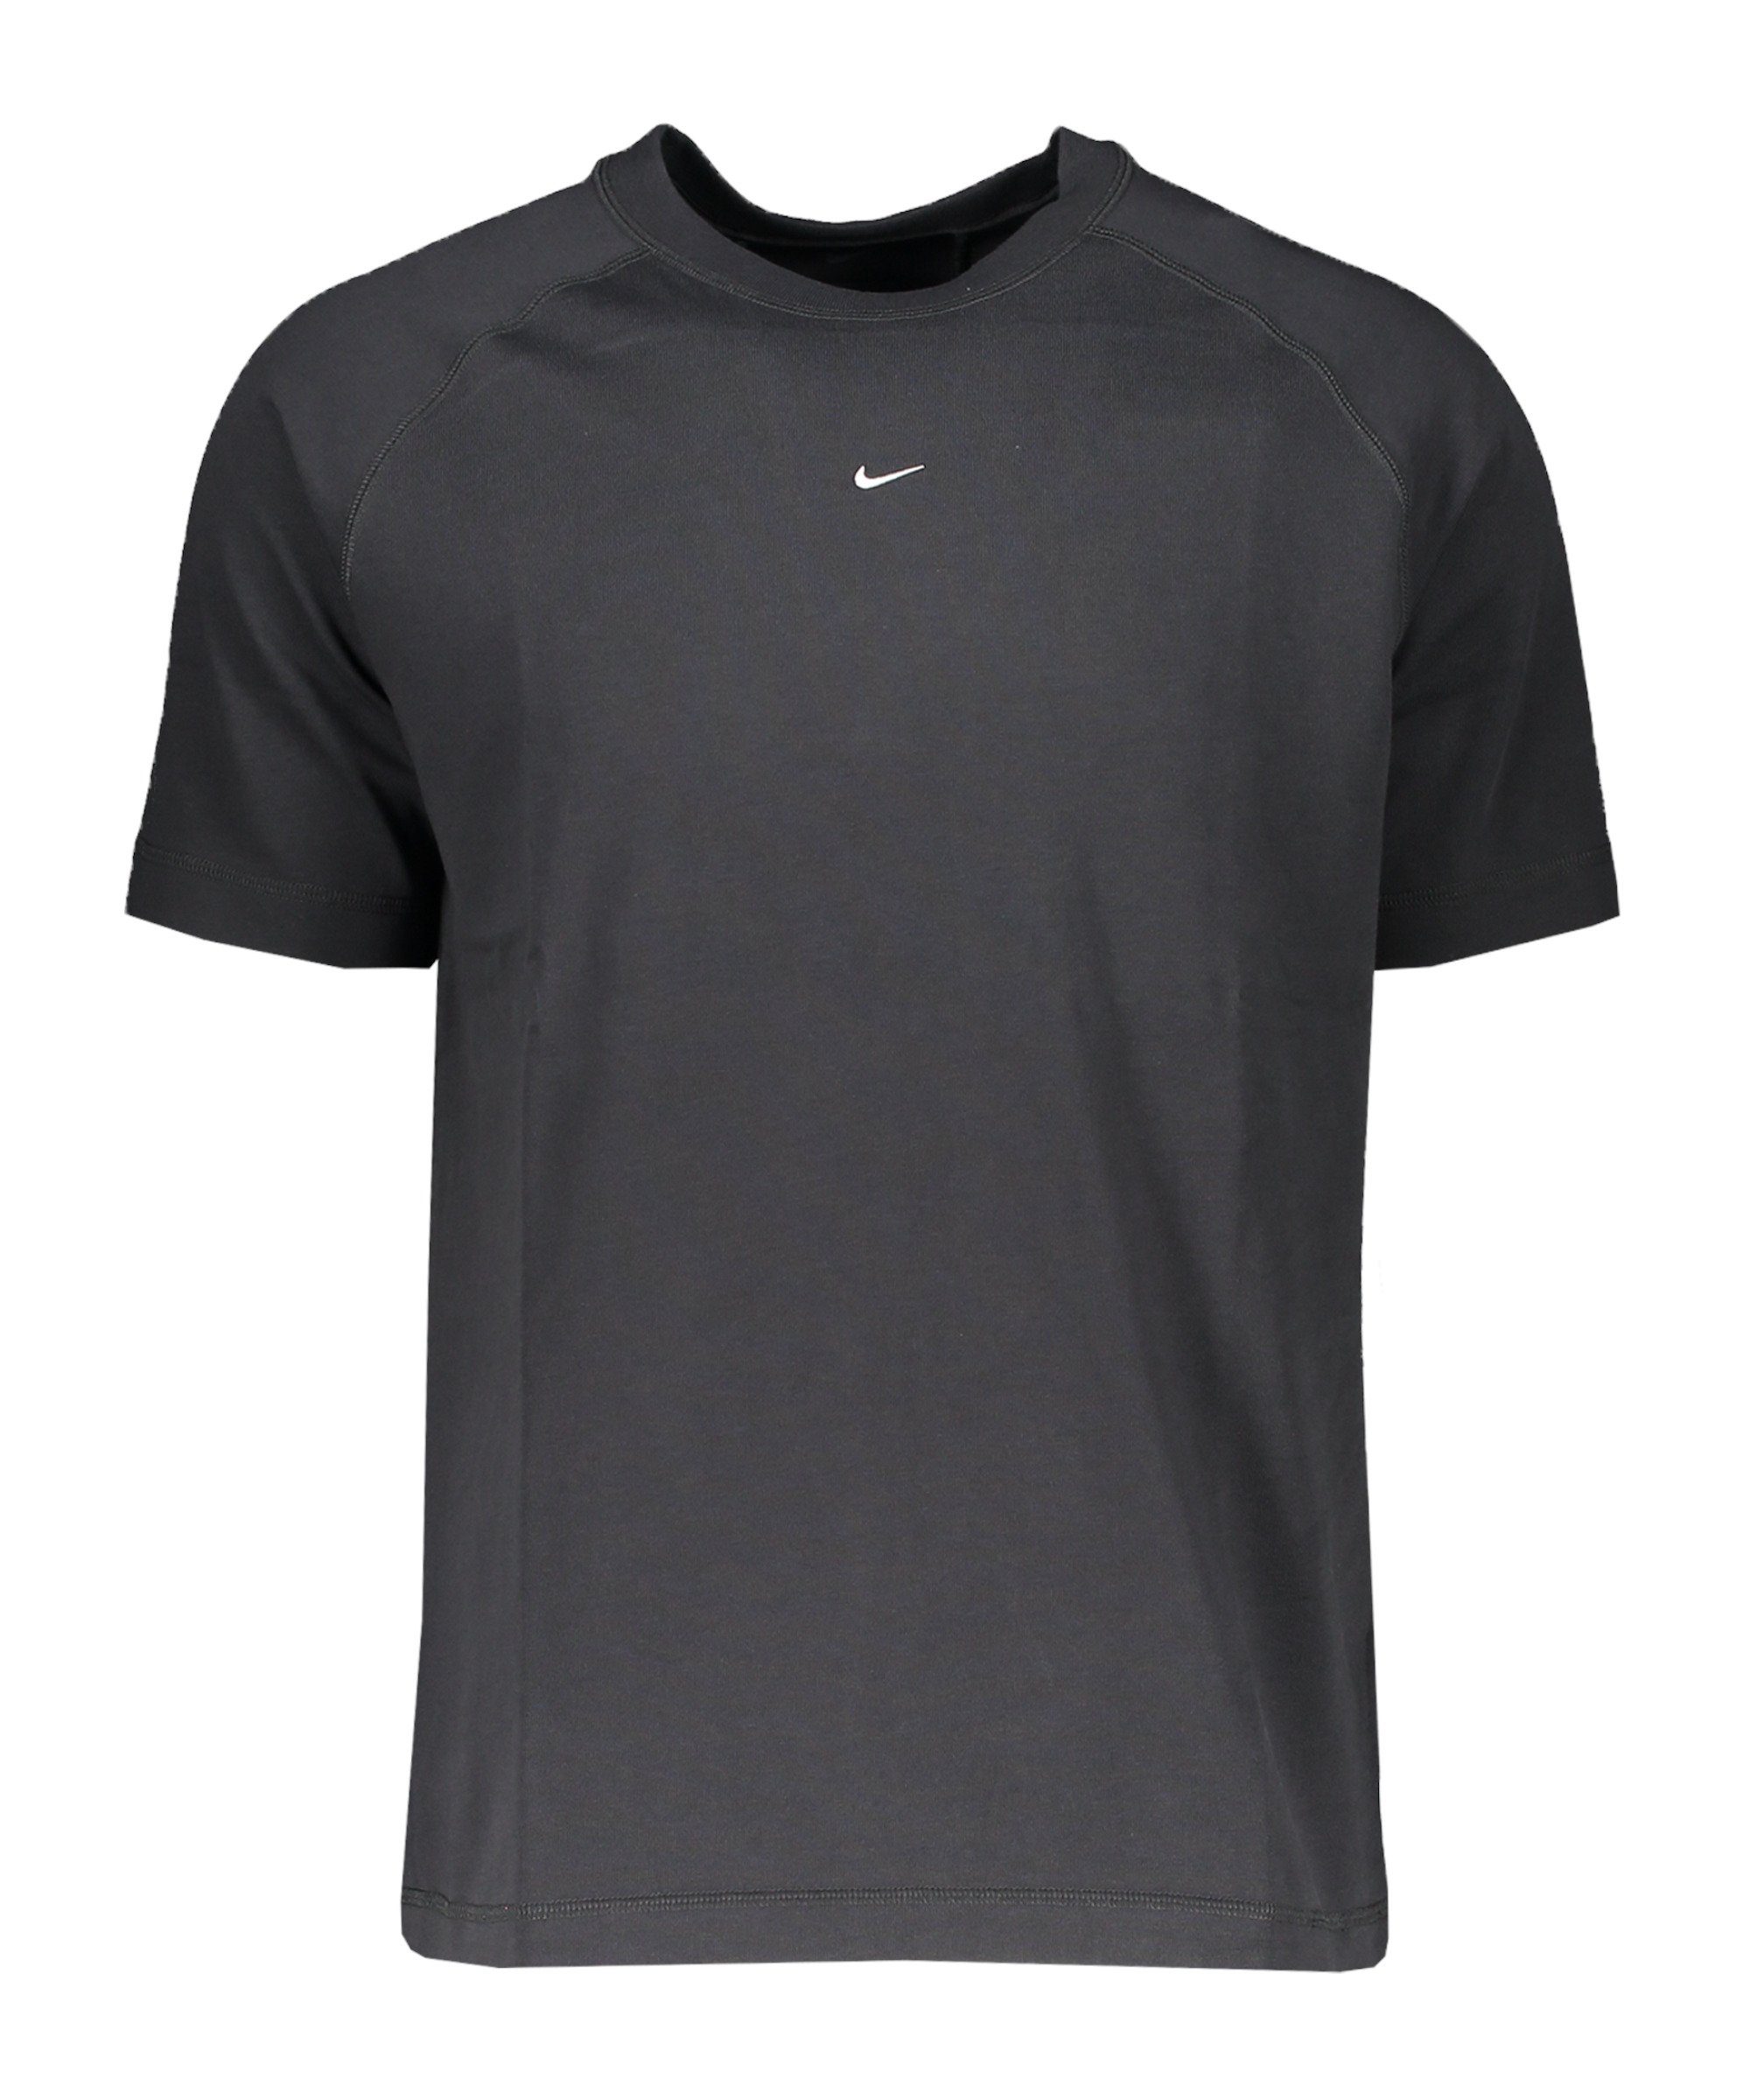 Nike grauweiss 22 T-Shirt Express T-Shirt Strike default